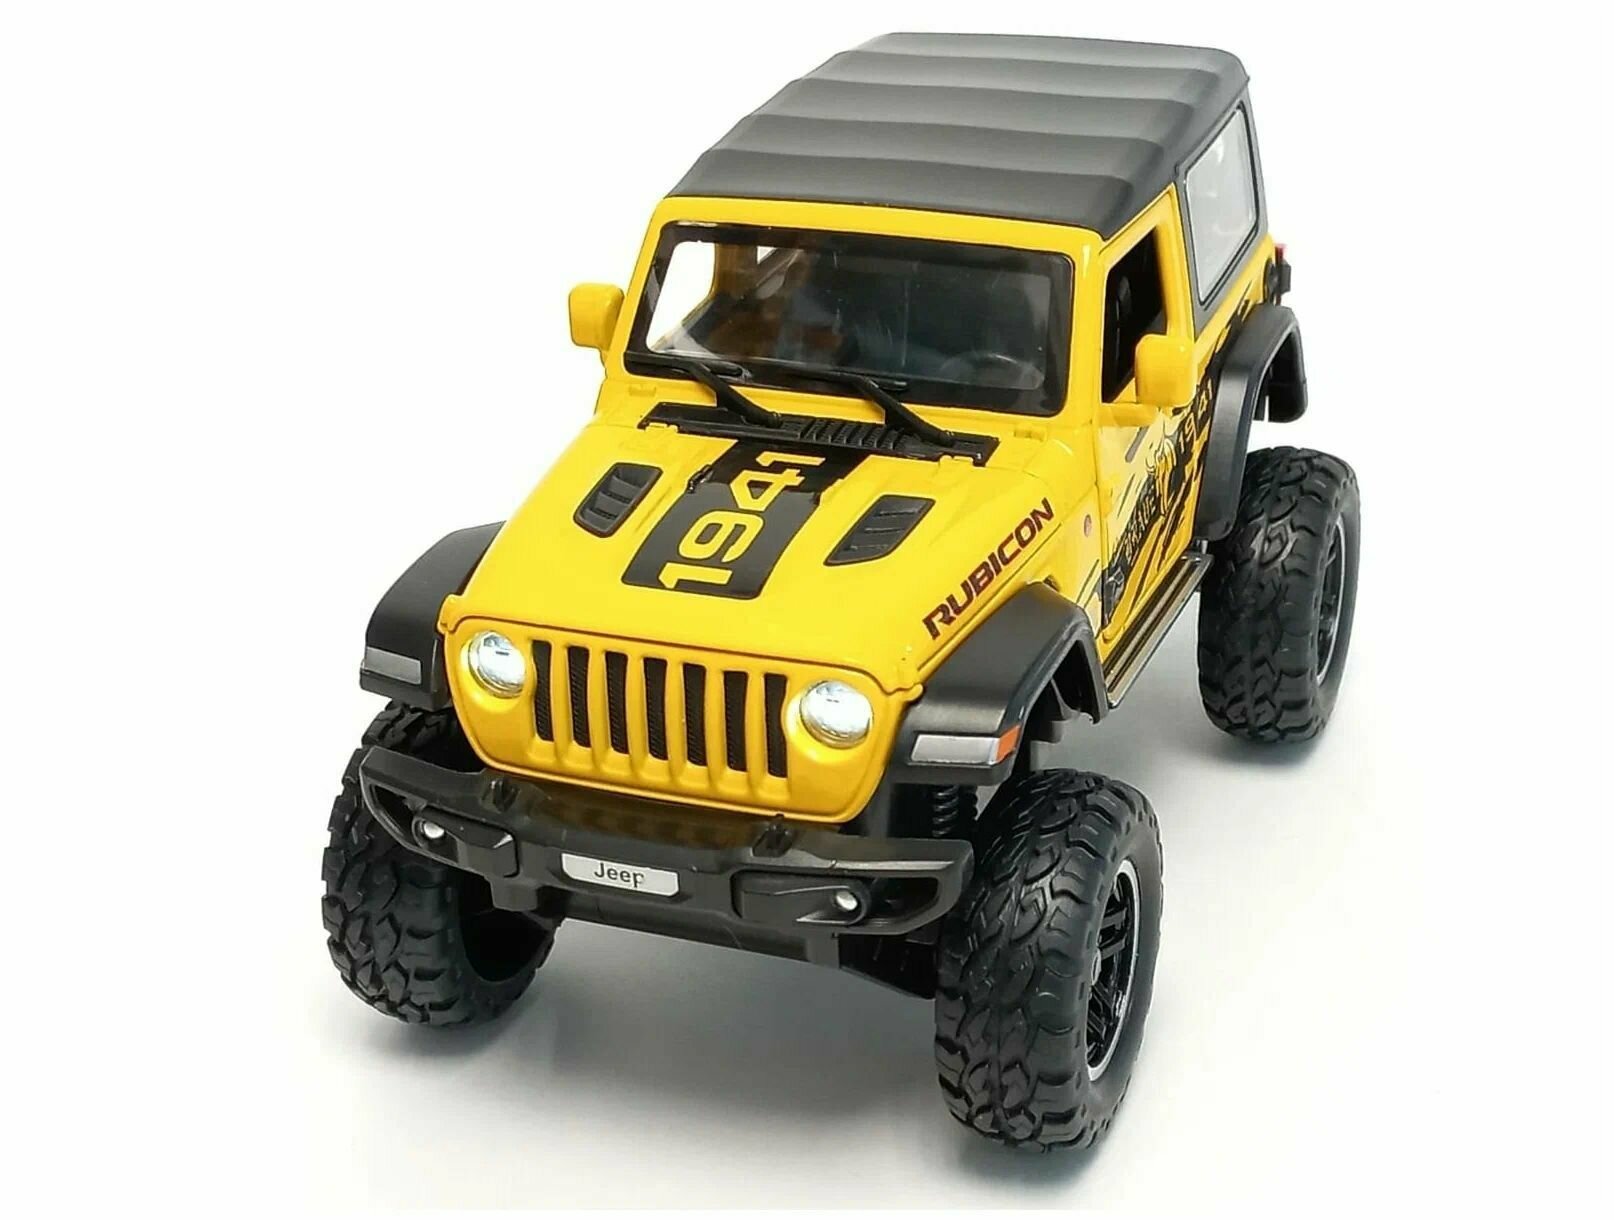 Машинка металлическая Jeep wrangler 1:24, Коллекционная модель машины для взрослых, Игрушечный автомобиль с звуковыми и световыми эффектами для детей